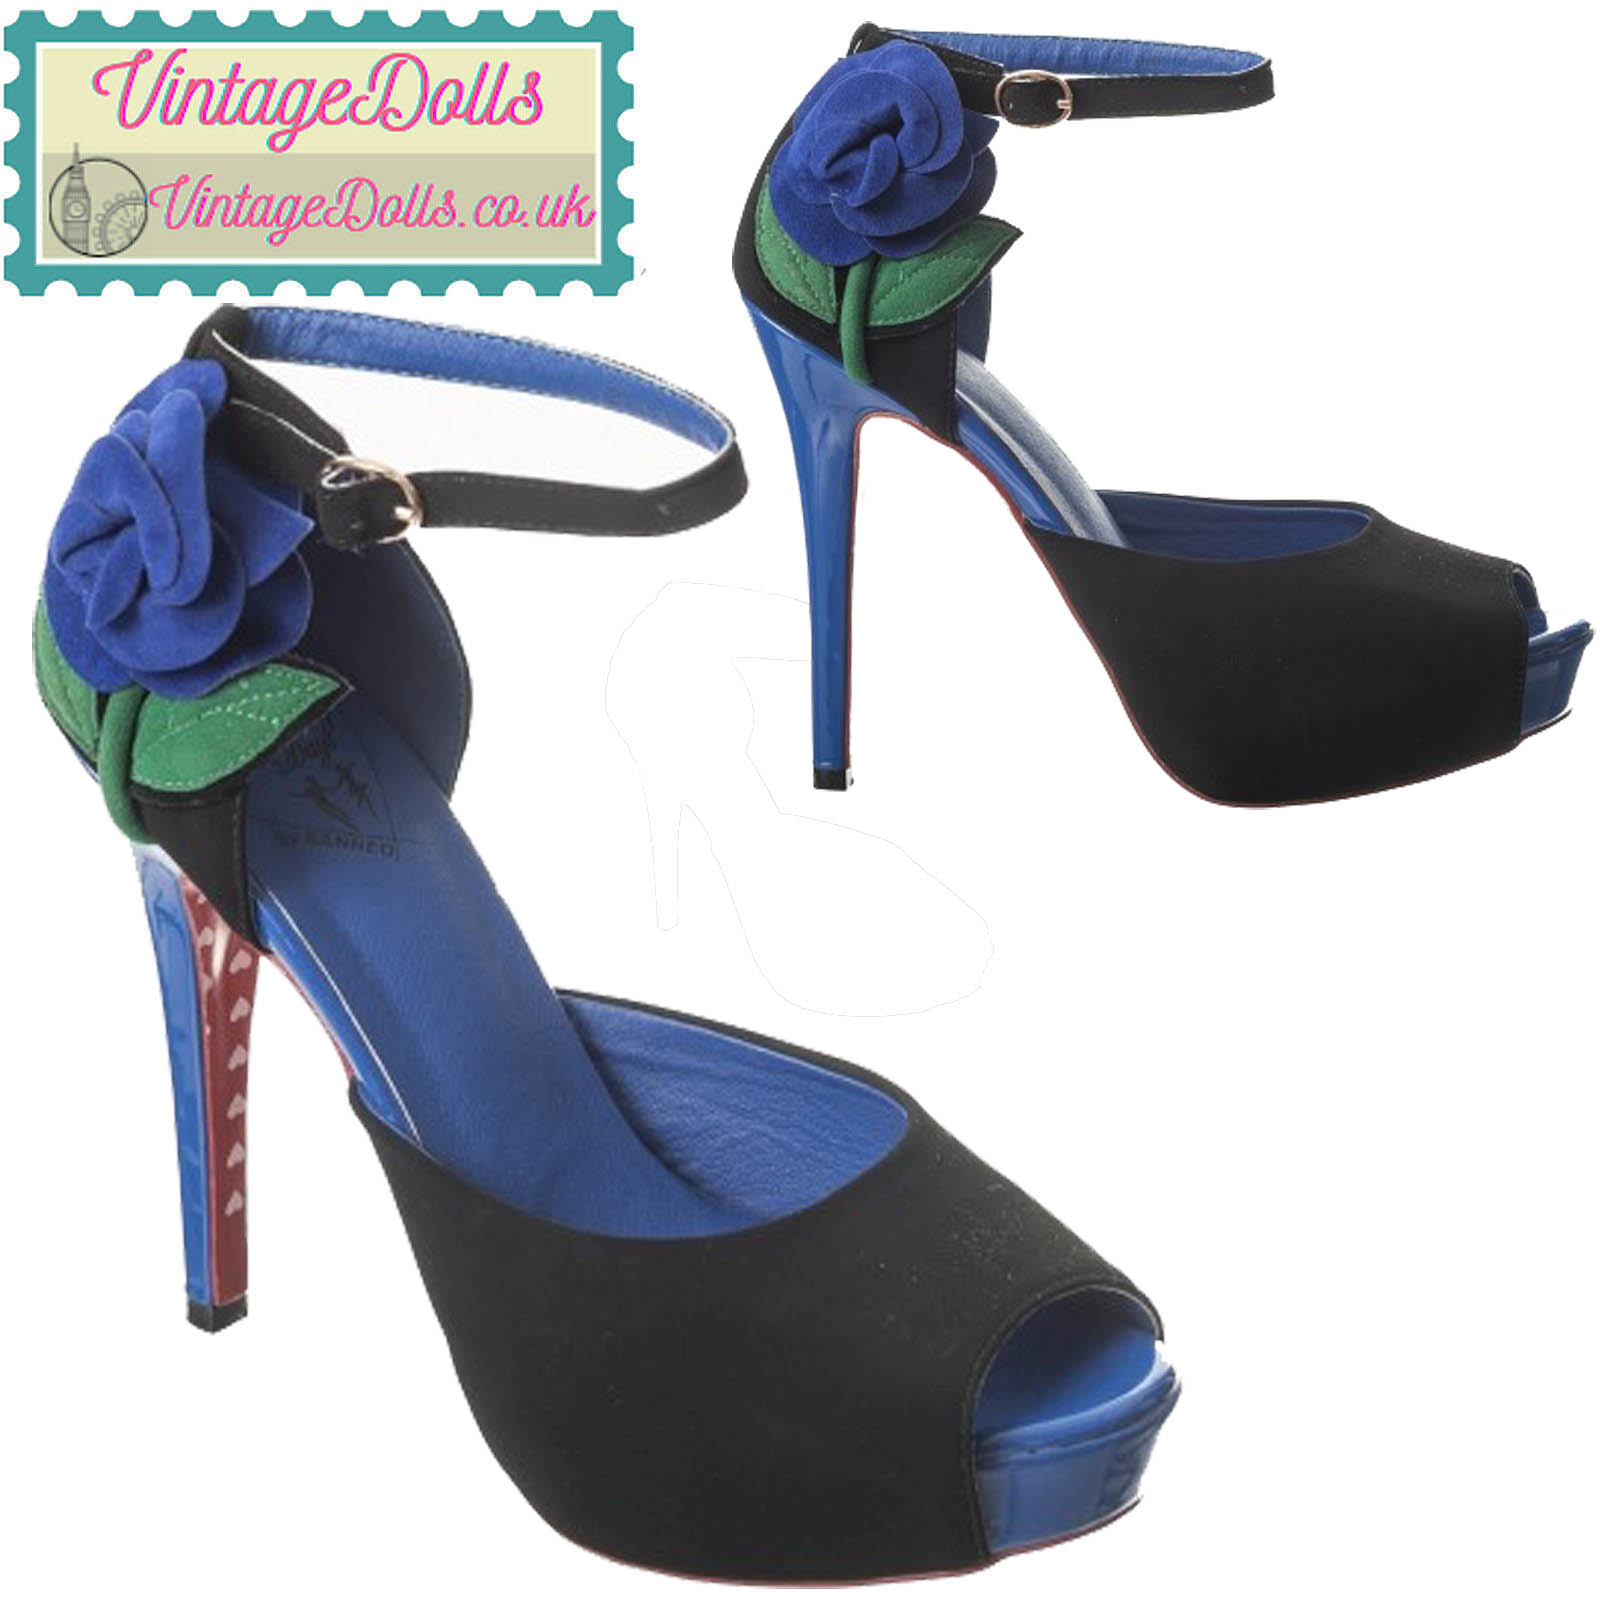 Heels - Upto 50% to 80% OFF on Heeled Sandals, High Heels For Women Online  - Flipkart.com